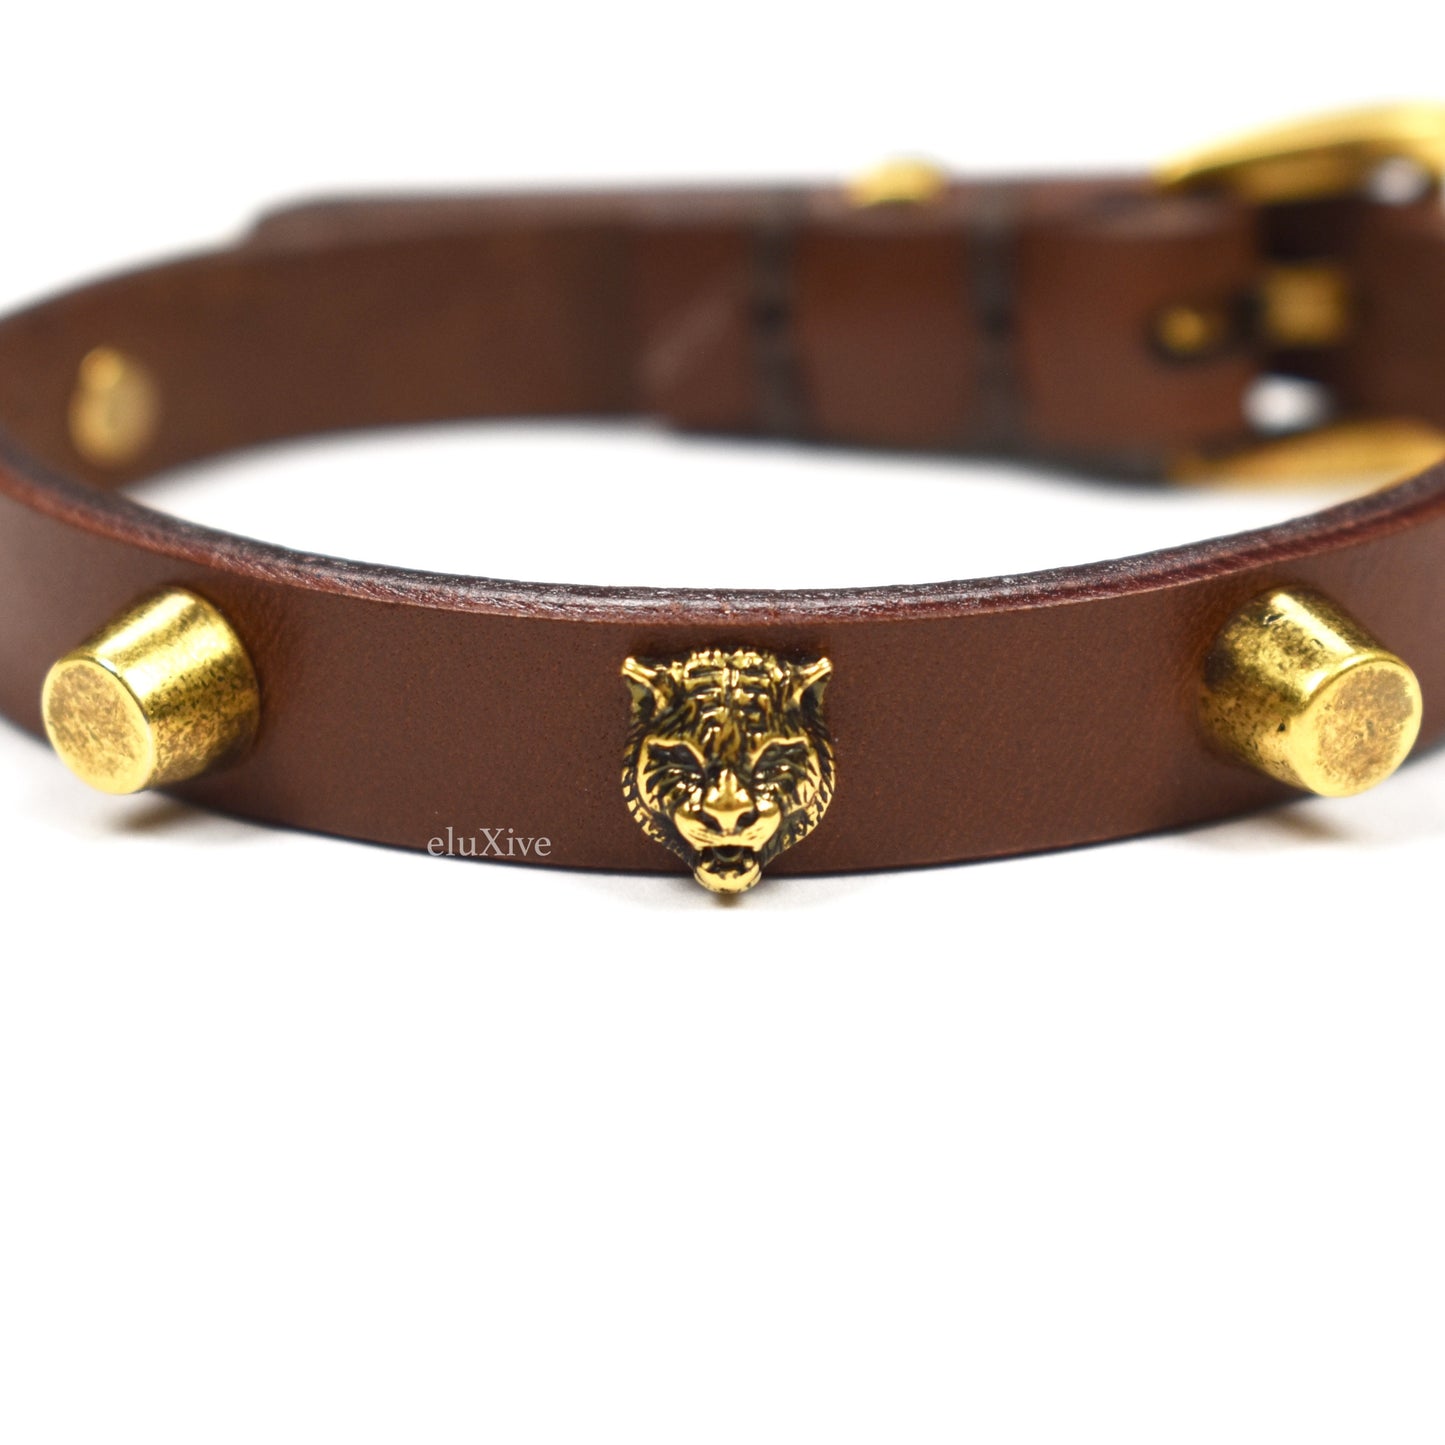 Gucci - Feline Studded Leather Bracelet (Brown)